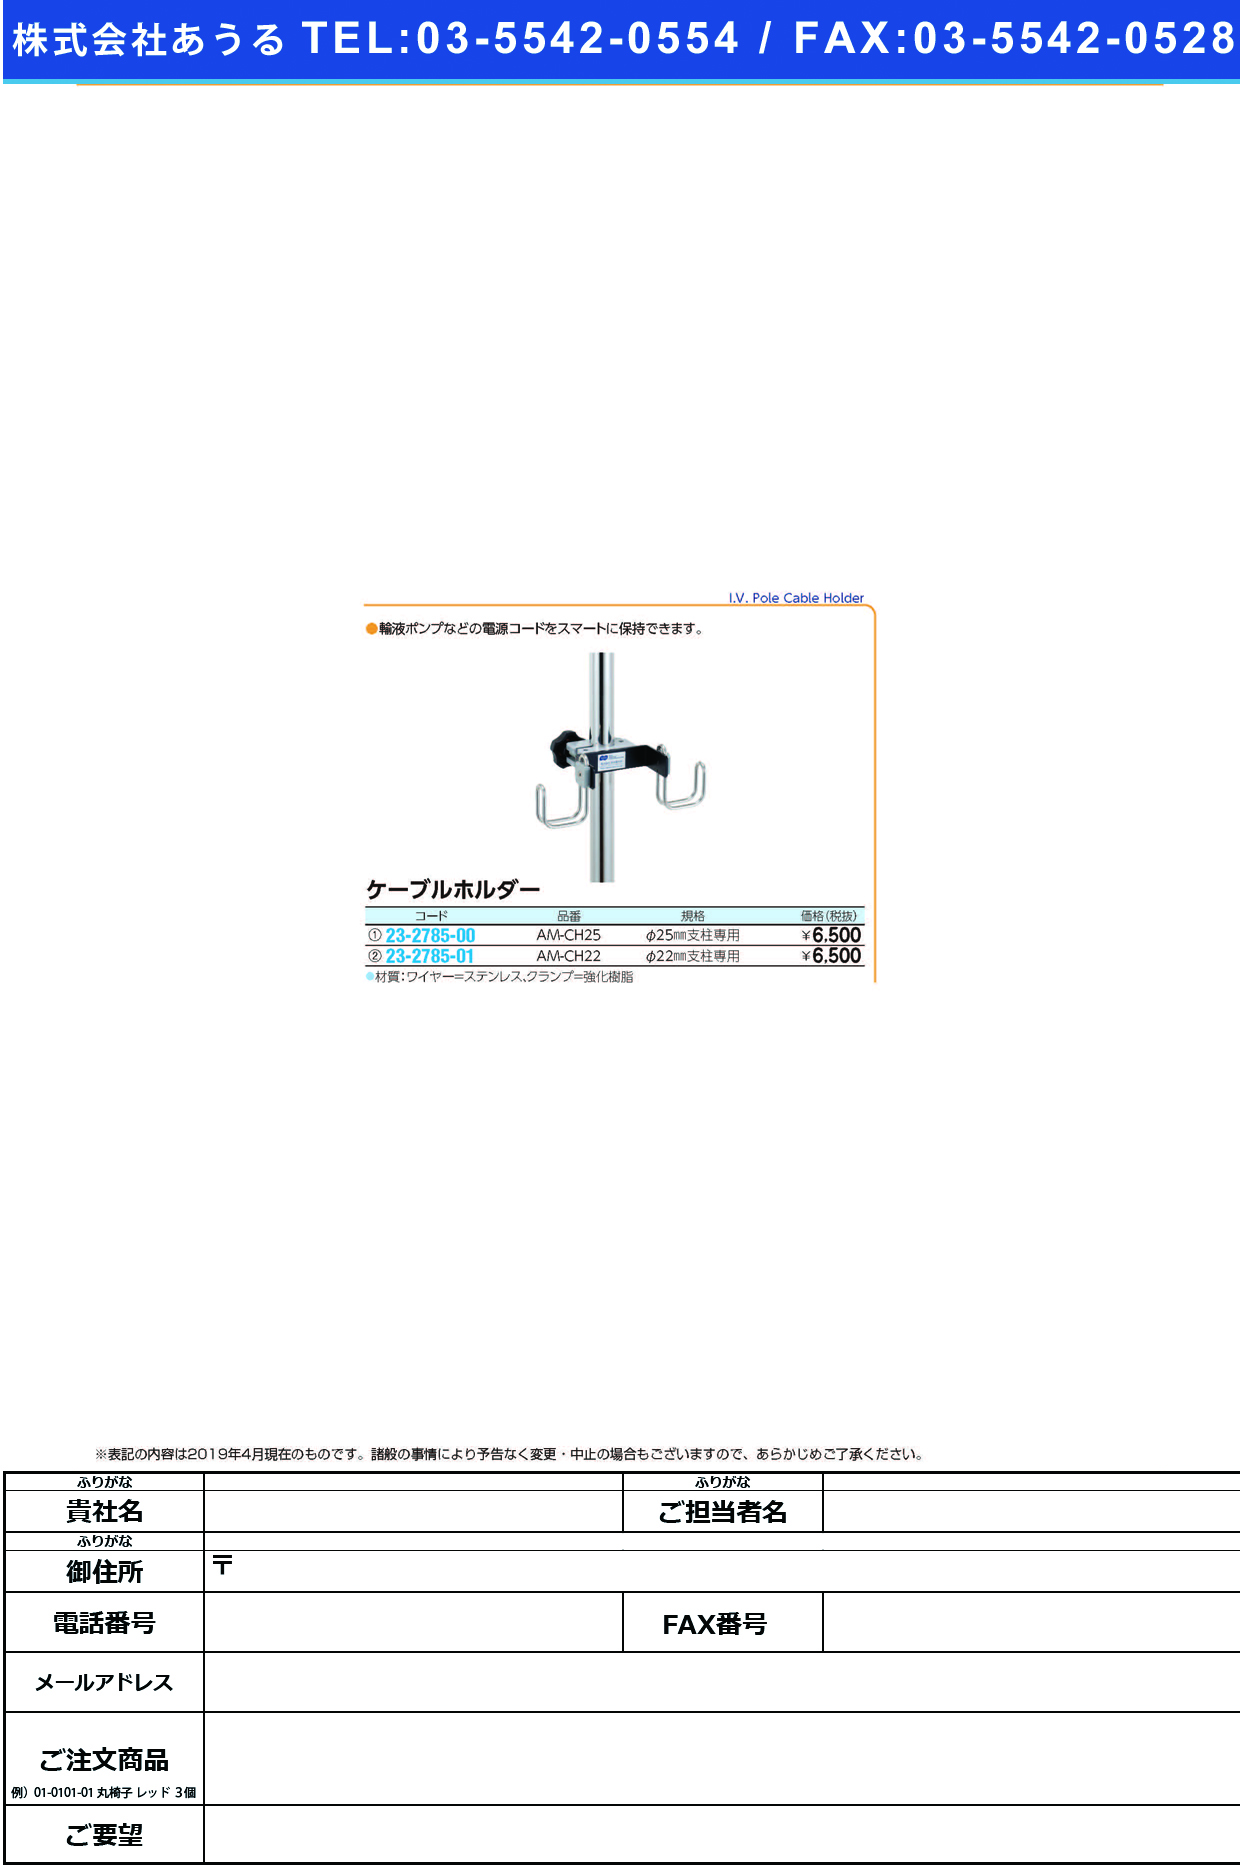 (23-2785-01)ケーブルホルダー（φ２２ｍｍ支柱専用 AM-CH22 ｹｰﾌﾞﾙﾎﾙﾀﾞｰ(ｹｲ22MMﾖｳ)【1個単位】【2019年カタログ商品】